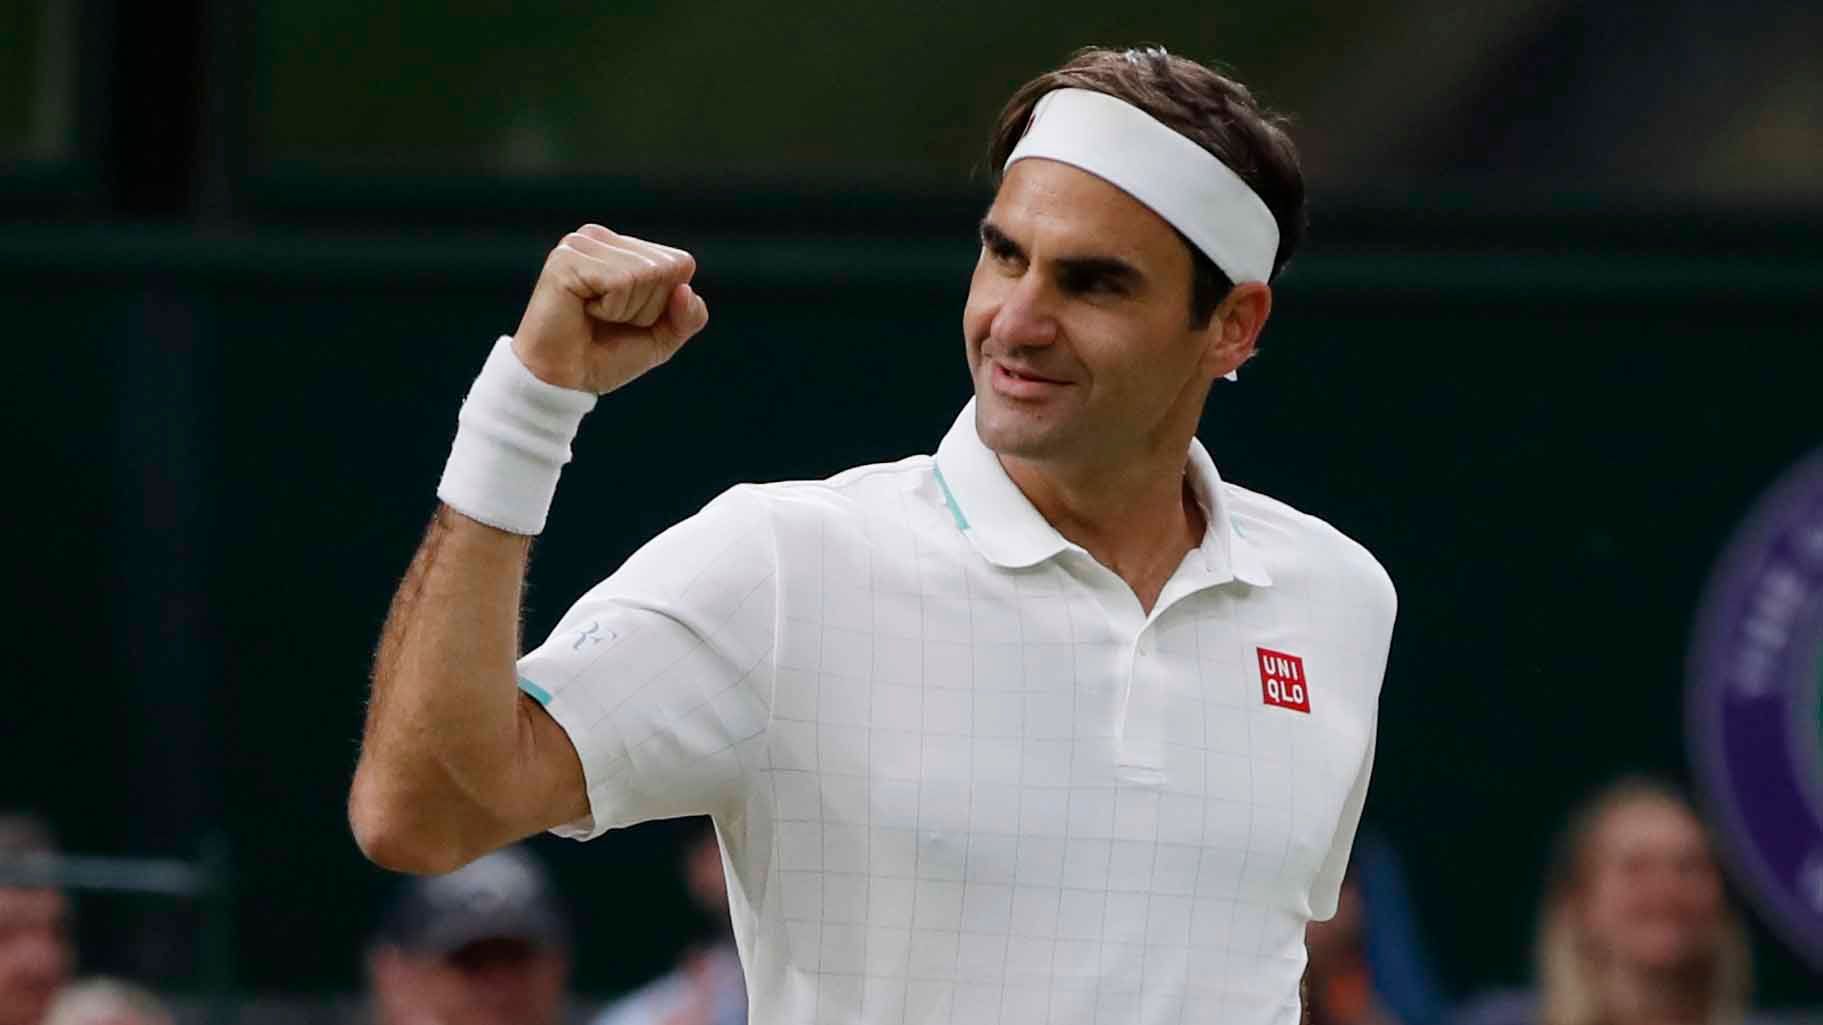 7. Roger Federer, tenis: 90 millones de dólares, 30 los ganó en las canchas y 90 fuera de ellas.